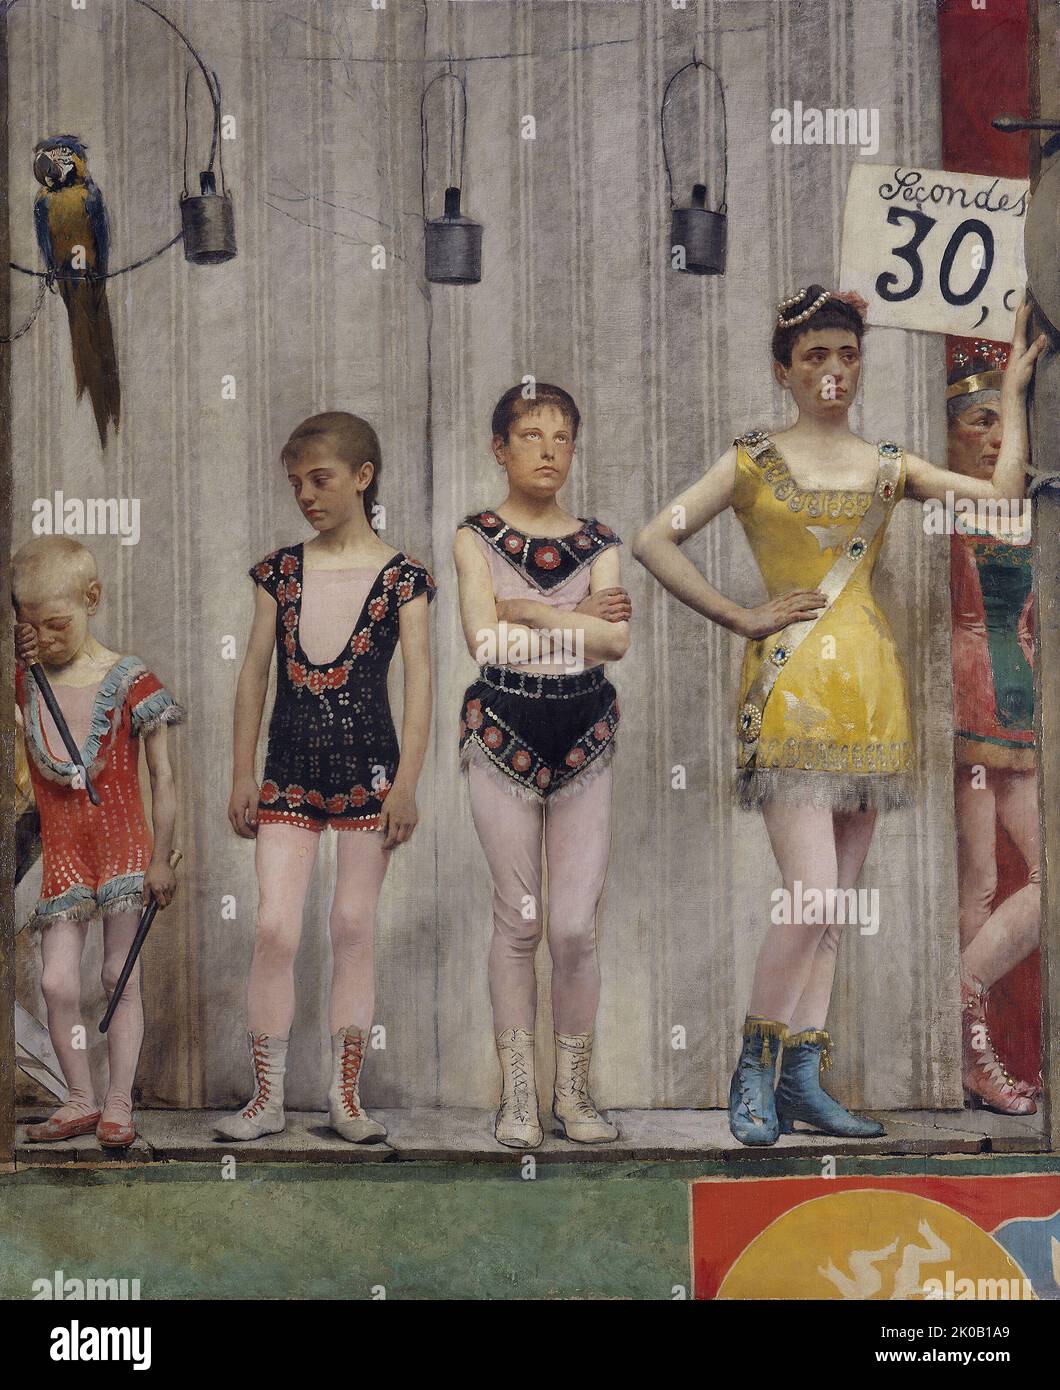 Grimaces et mis&#xe8;re - Les Saltimbanques (acrobates), 1888. Stock Photo